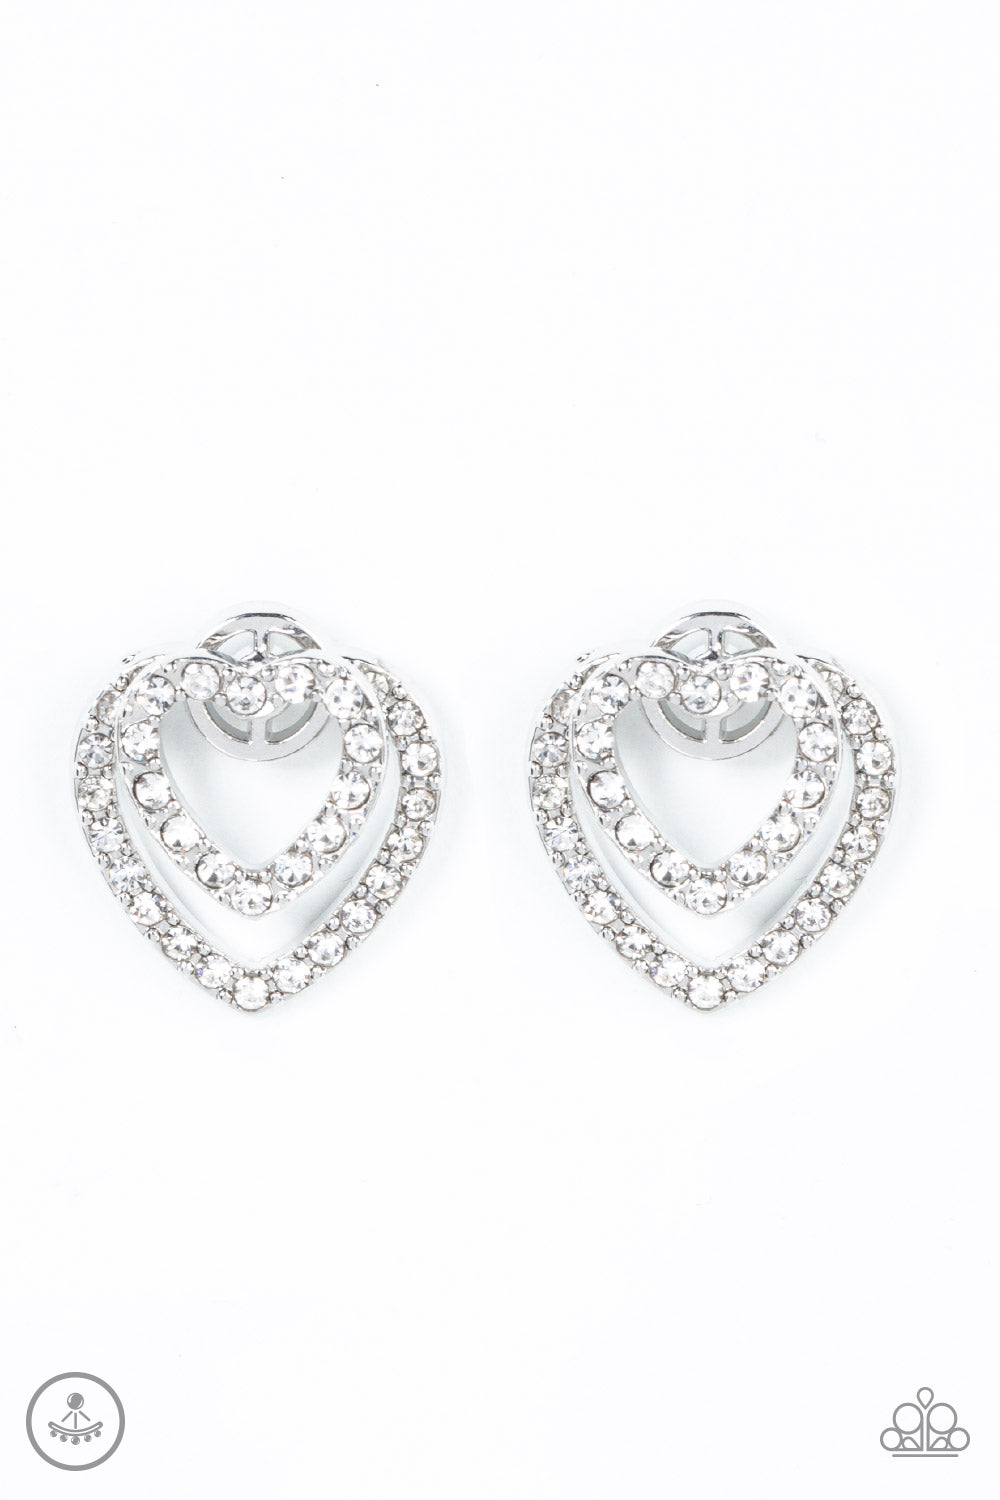 Ever Enamored - White earrings